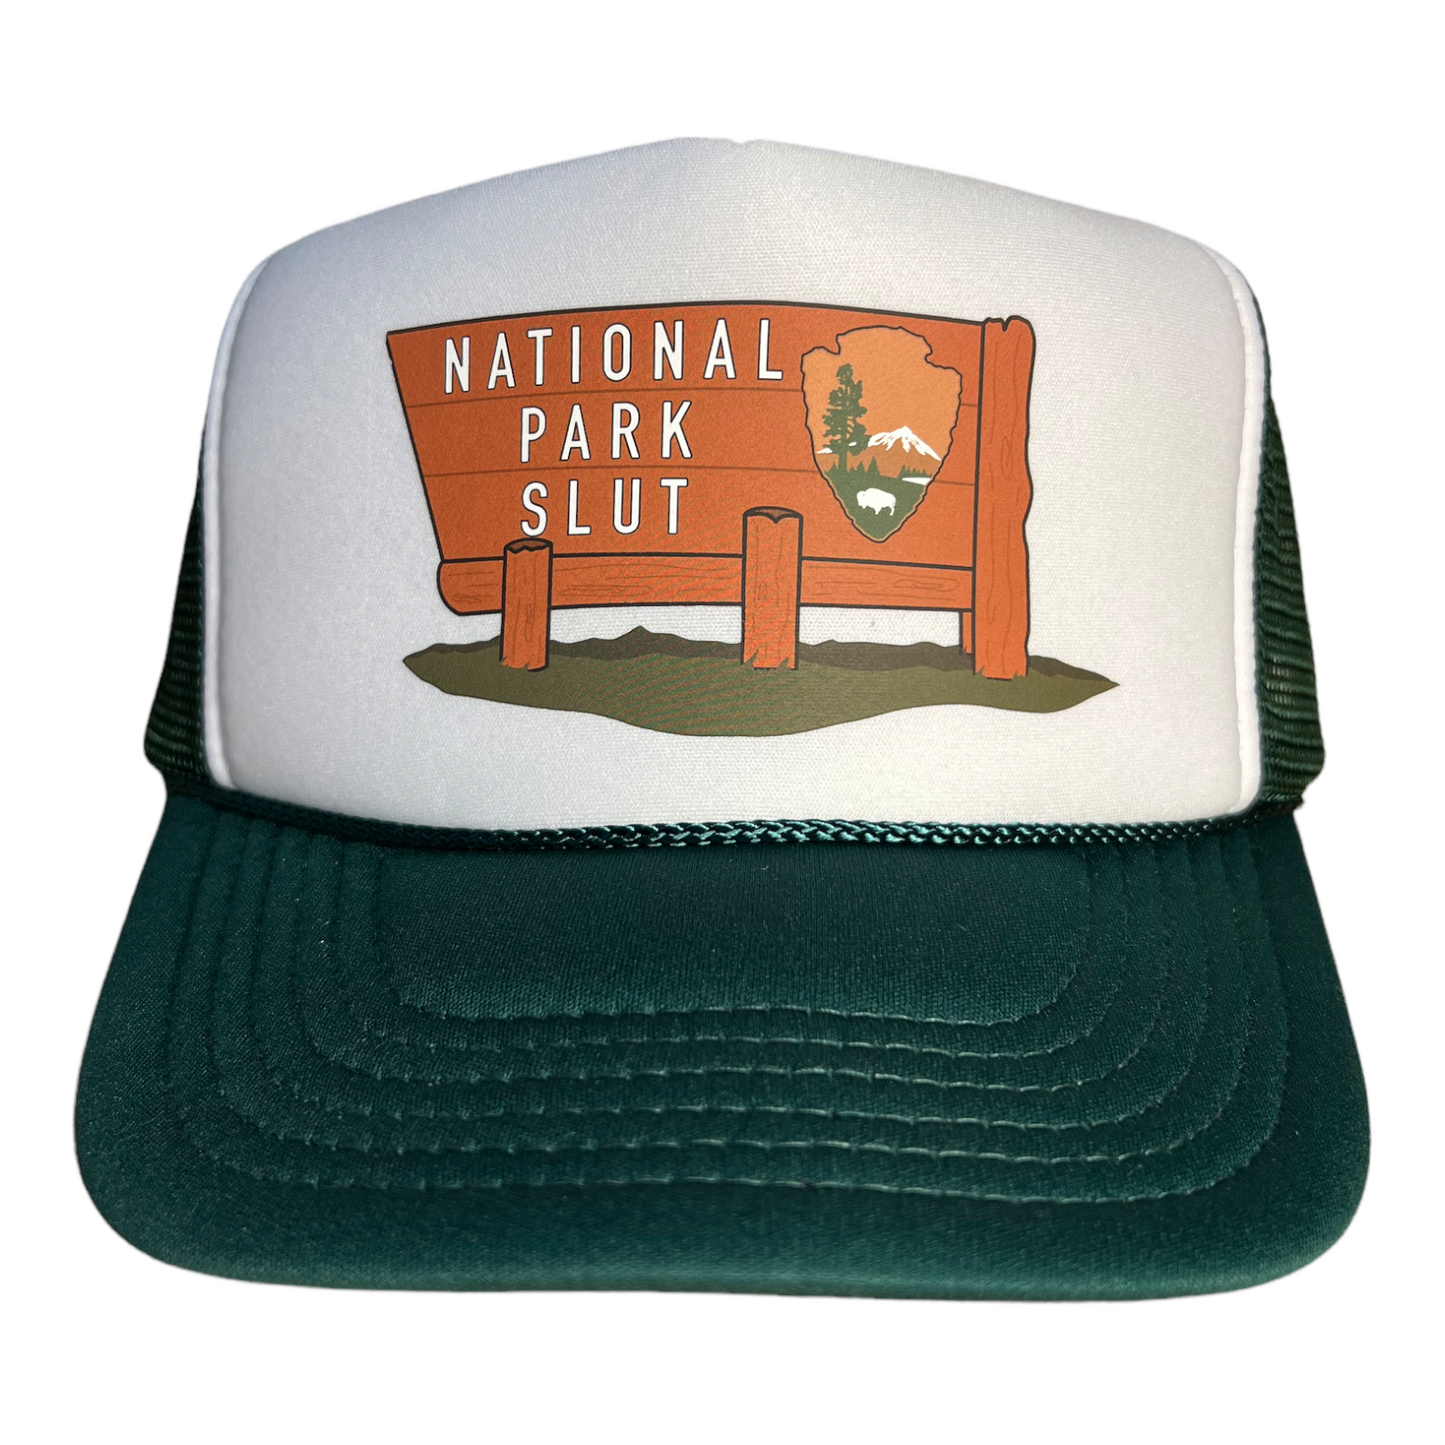 National Park Slut Trucker Hat Funny Trucker Hat Green/White